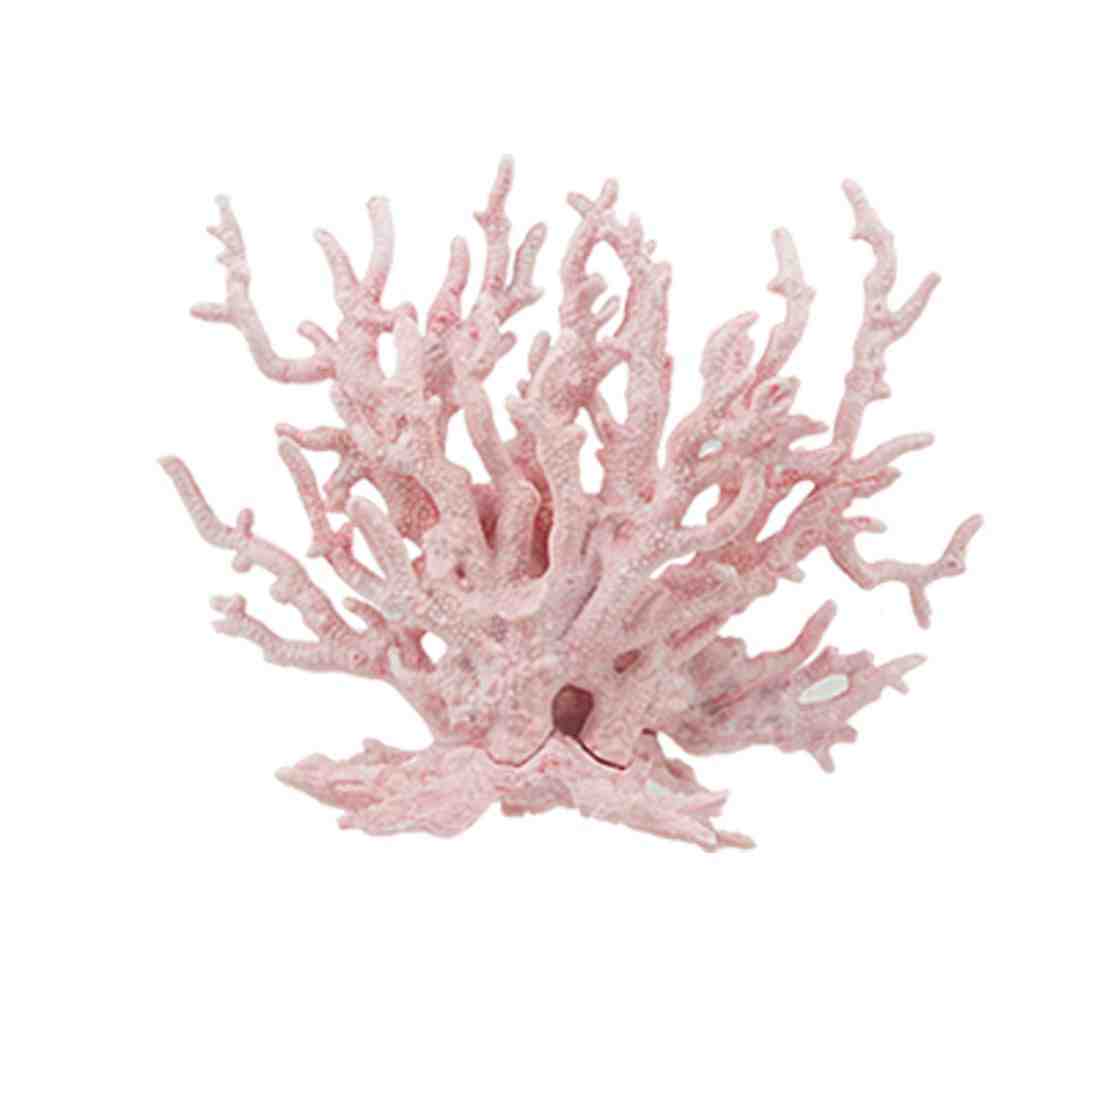 Aquarium Coral Decorations - Decor Ideas